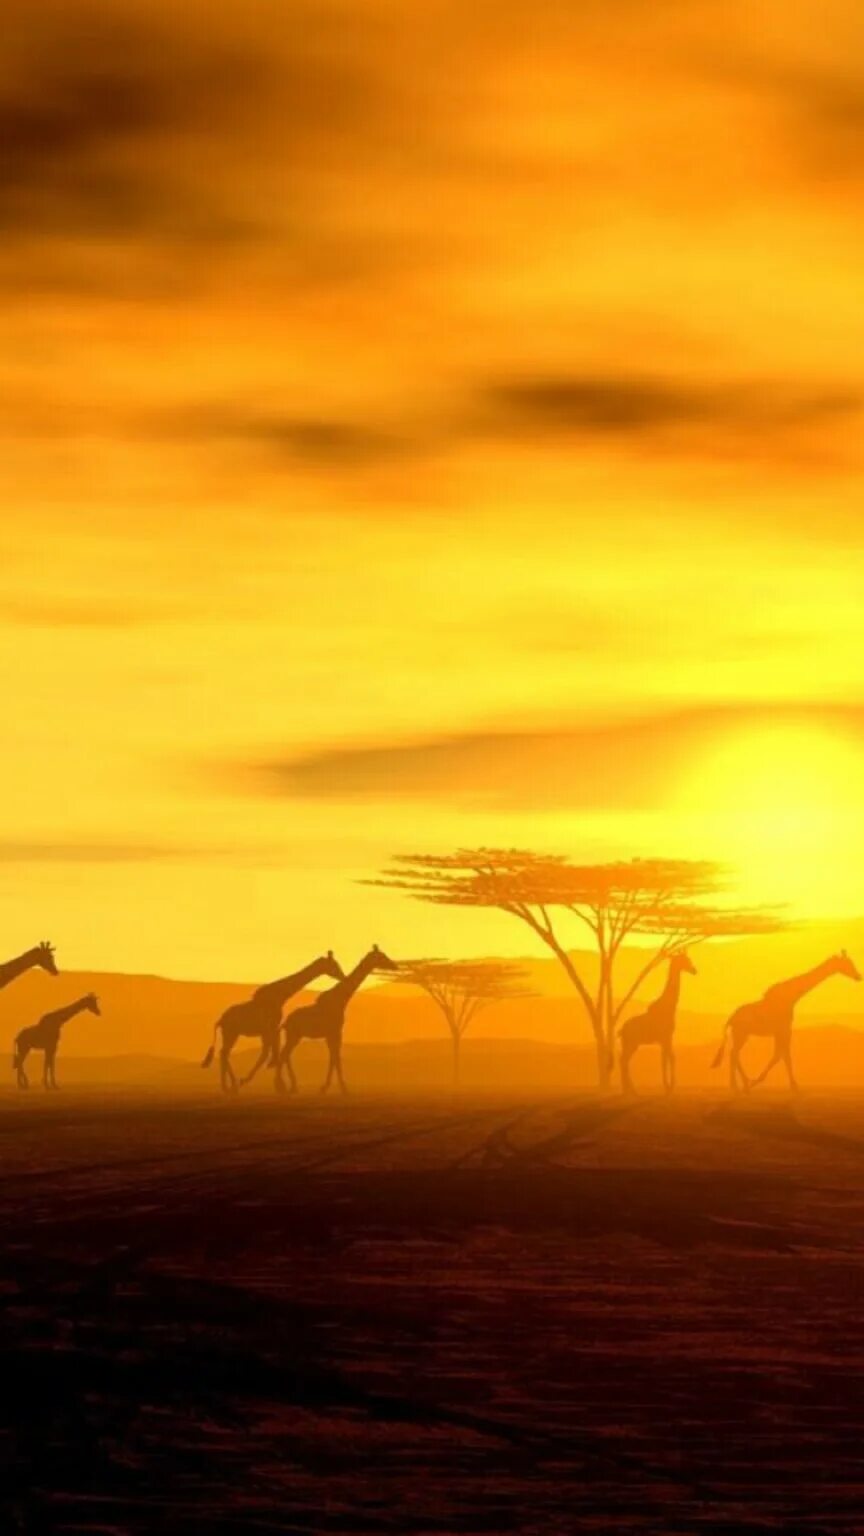 Good africa. Саванна пейзаж. Африка. Африканский закат. Саванна арт.